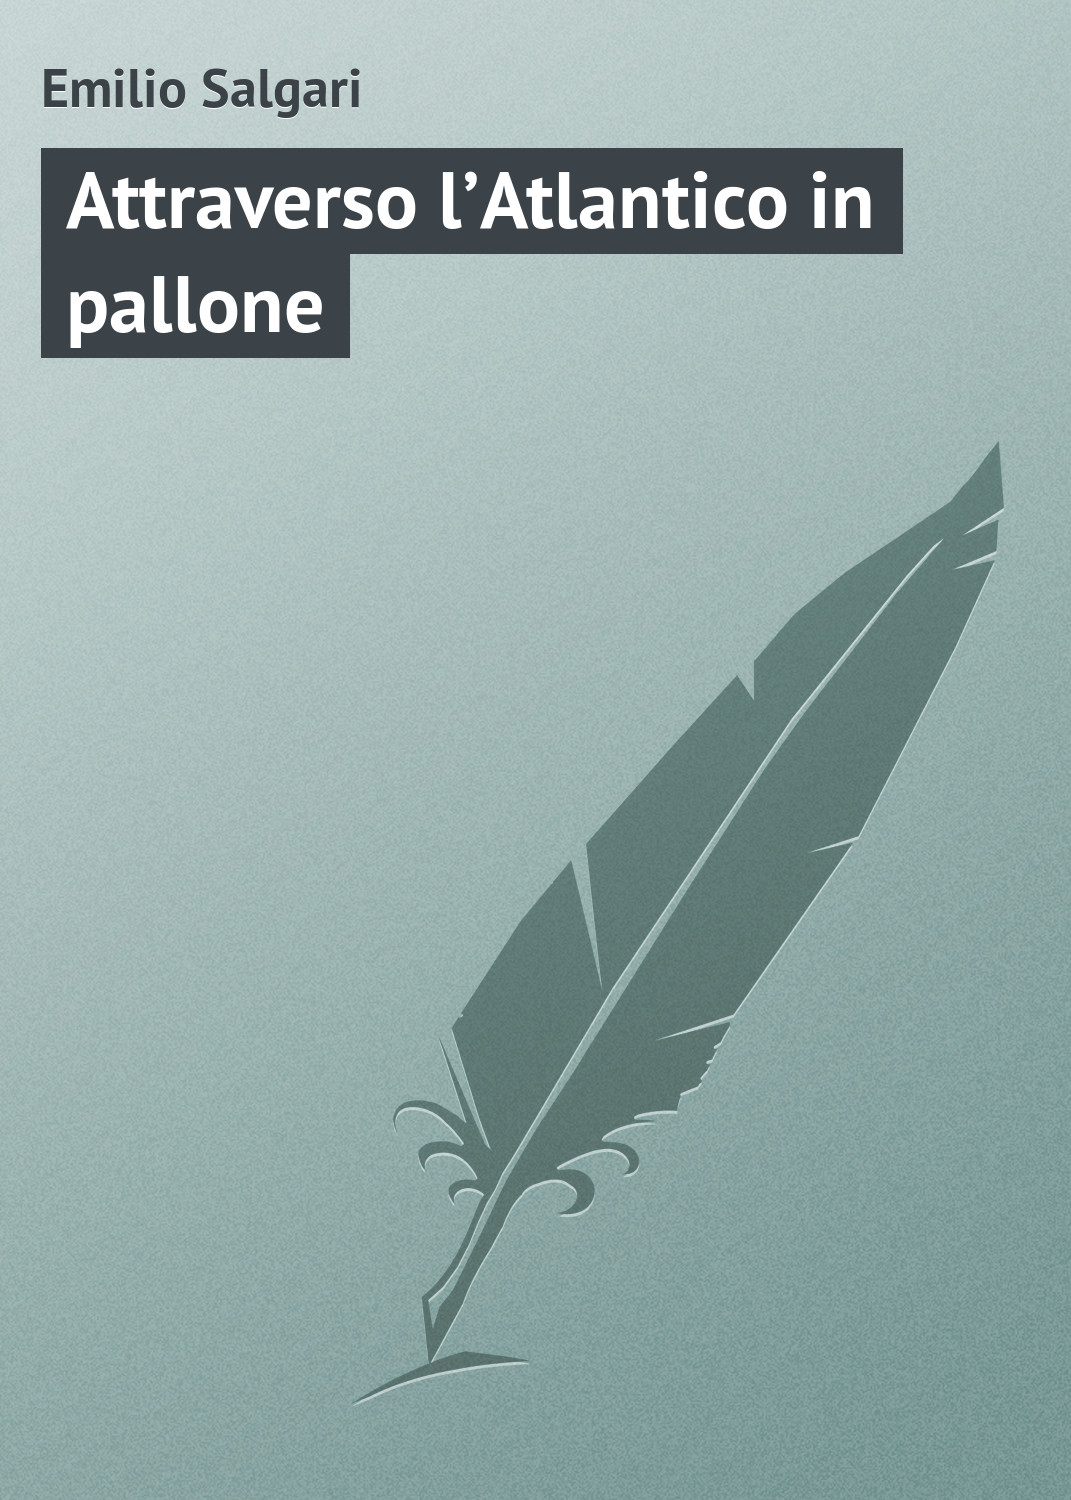 Книга Attraverso l’Atlantico in pallone из серии , созданная Emilio Salgari, может относится к жанру Зарубежная старинная литература, Зарубежная классика. Стоимость электронной книги Attraverso l’Atlantico in pallone с идентификатором 21103950 составляет 5.99 руб.